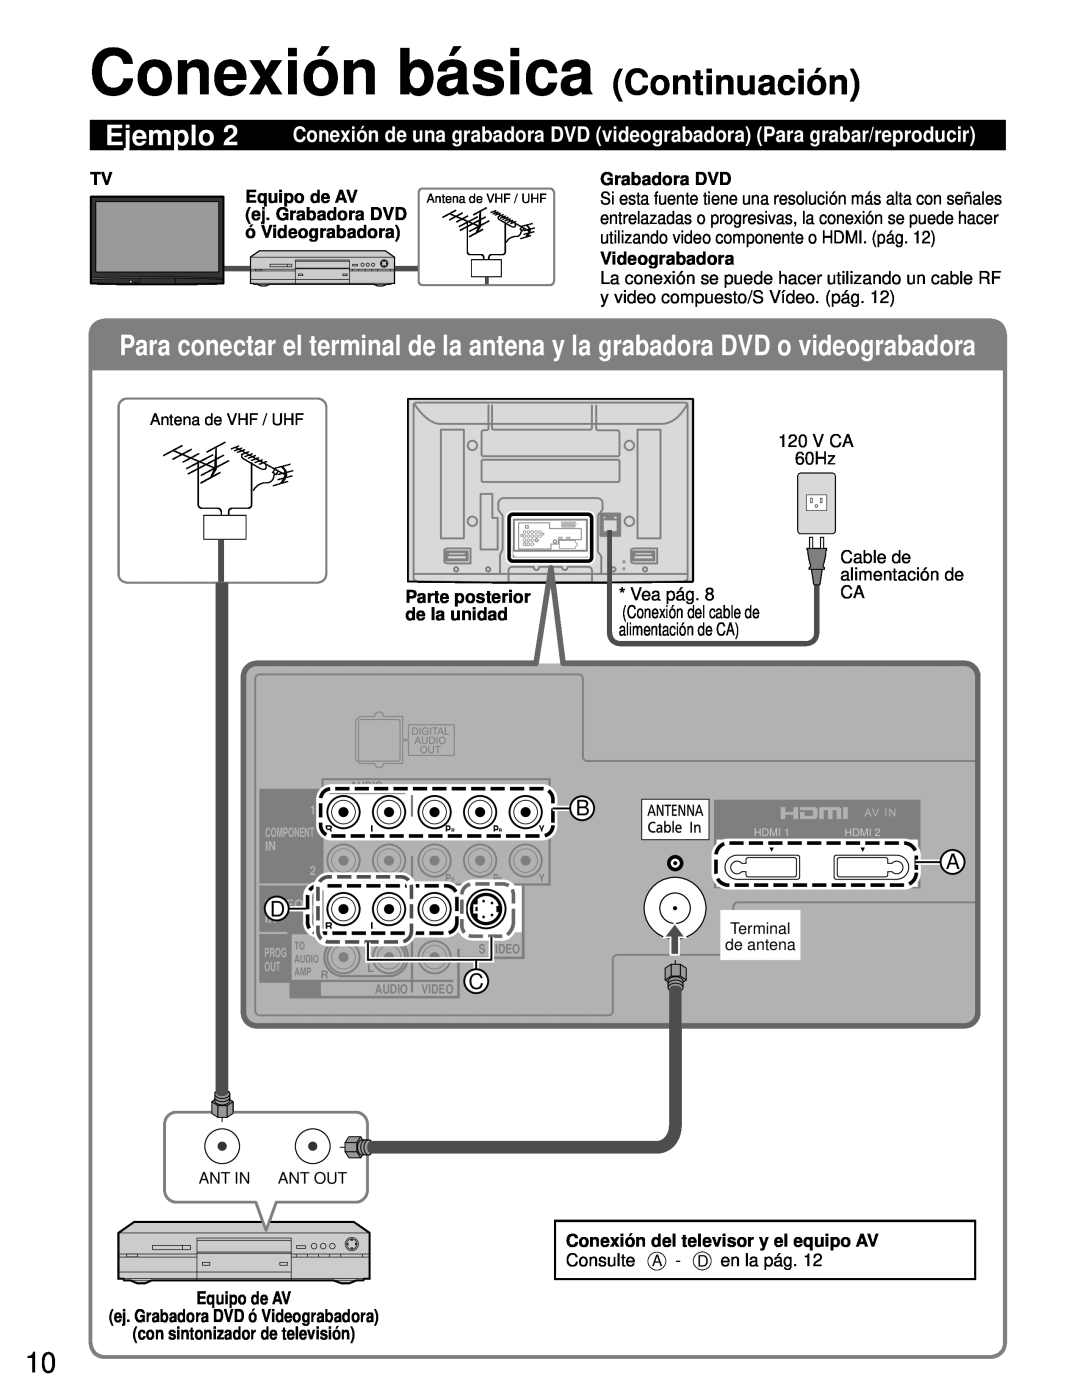 Panasonic TH-50PZ80U, TH-46PZ80U Conexión básica Continuación, Equipo de AV, ej. Grabadora DVD, ó Videograbadora, Ejemplo 